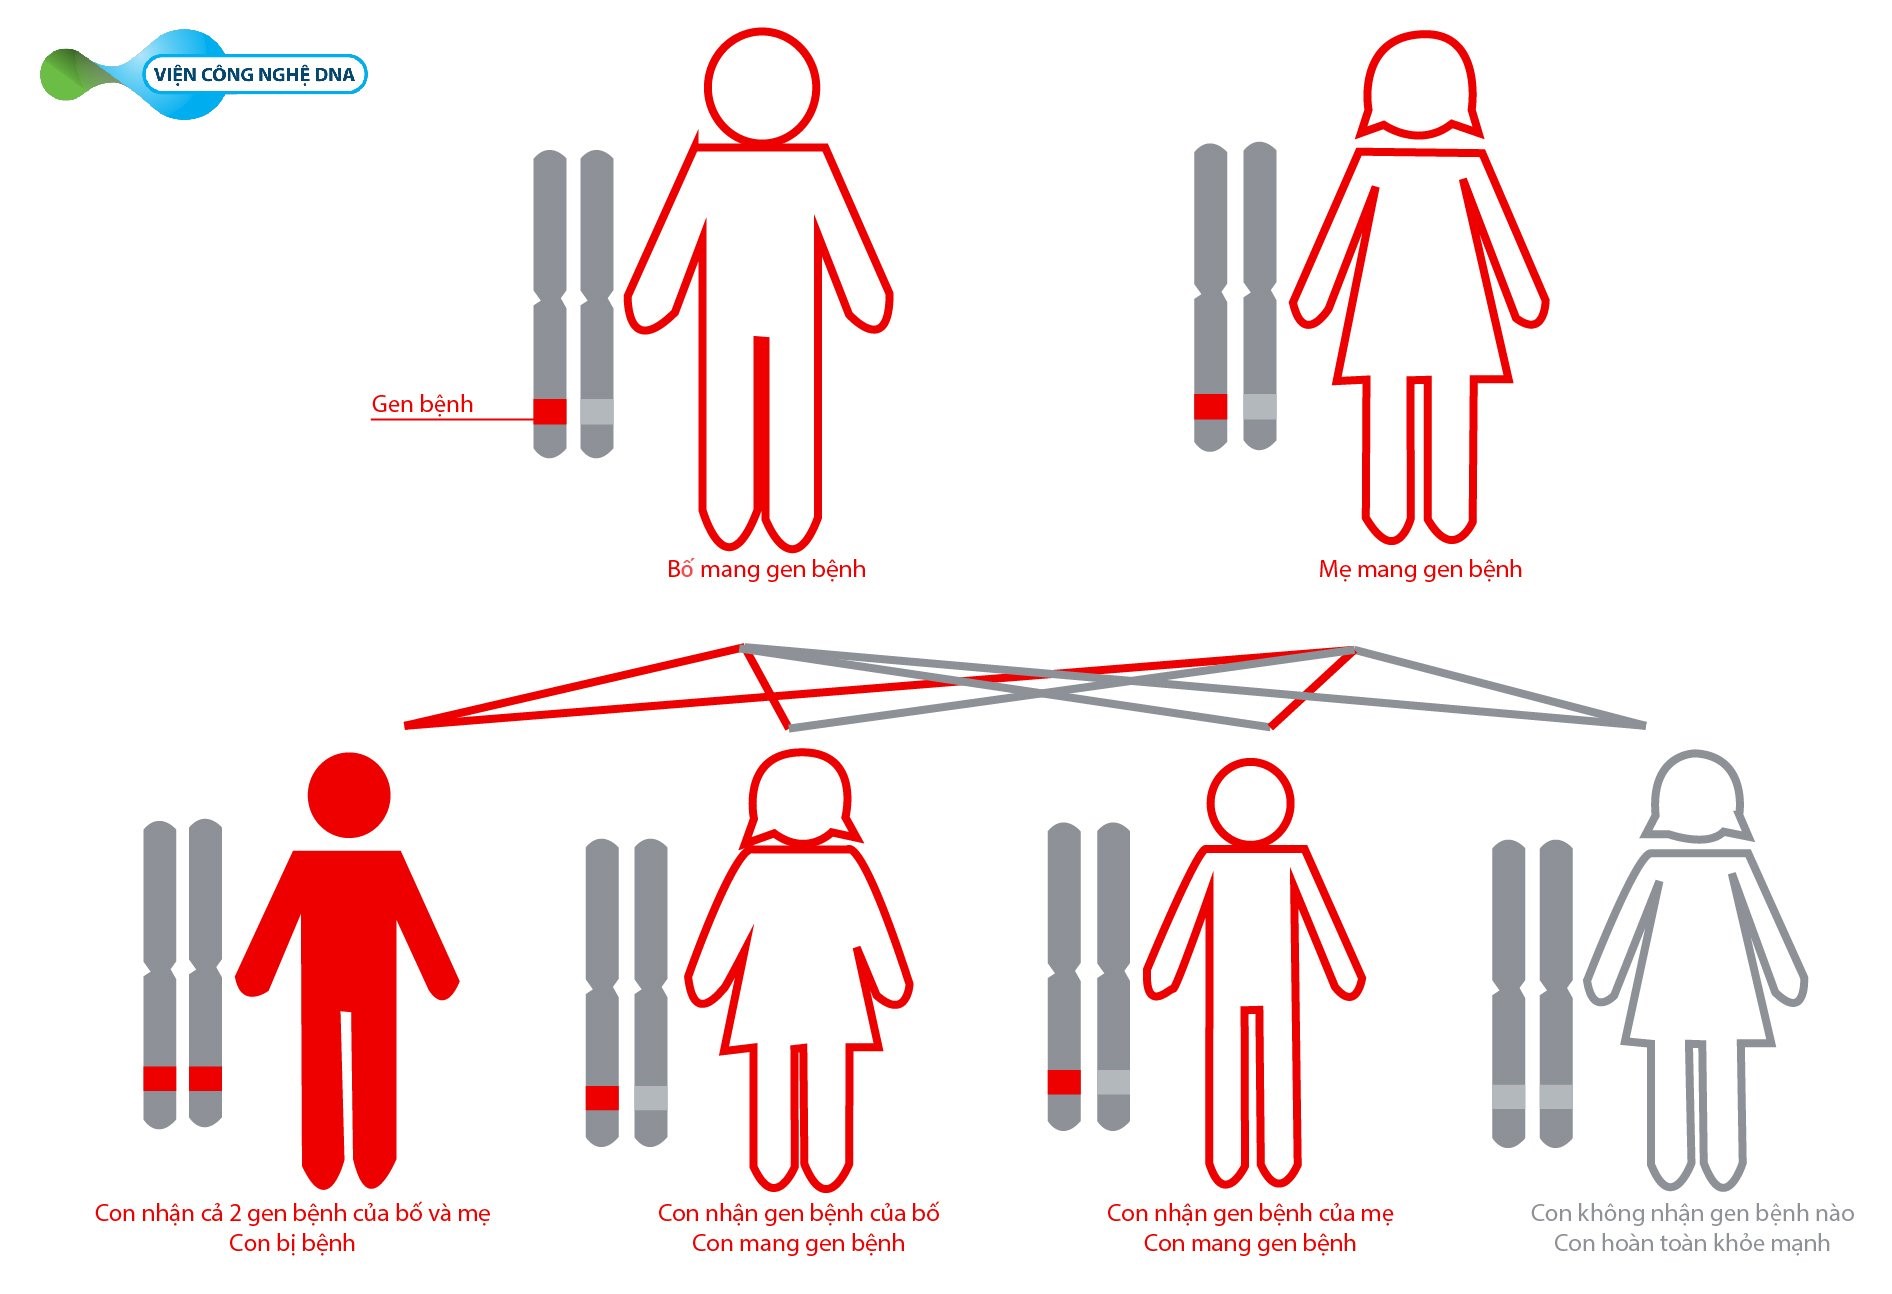 Khi bố và mẹ cùng mang gen bệnh, sẽ có 25% khả năng con sinh ra bị mắc bệnh. Nguy cơ này lặp lại trong mỗi lần sinh con.